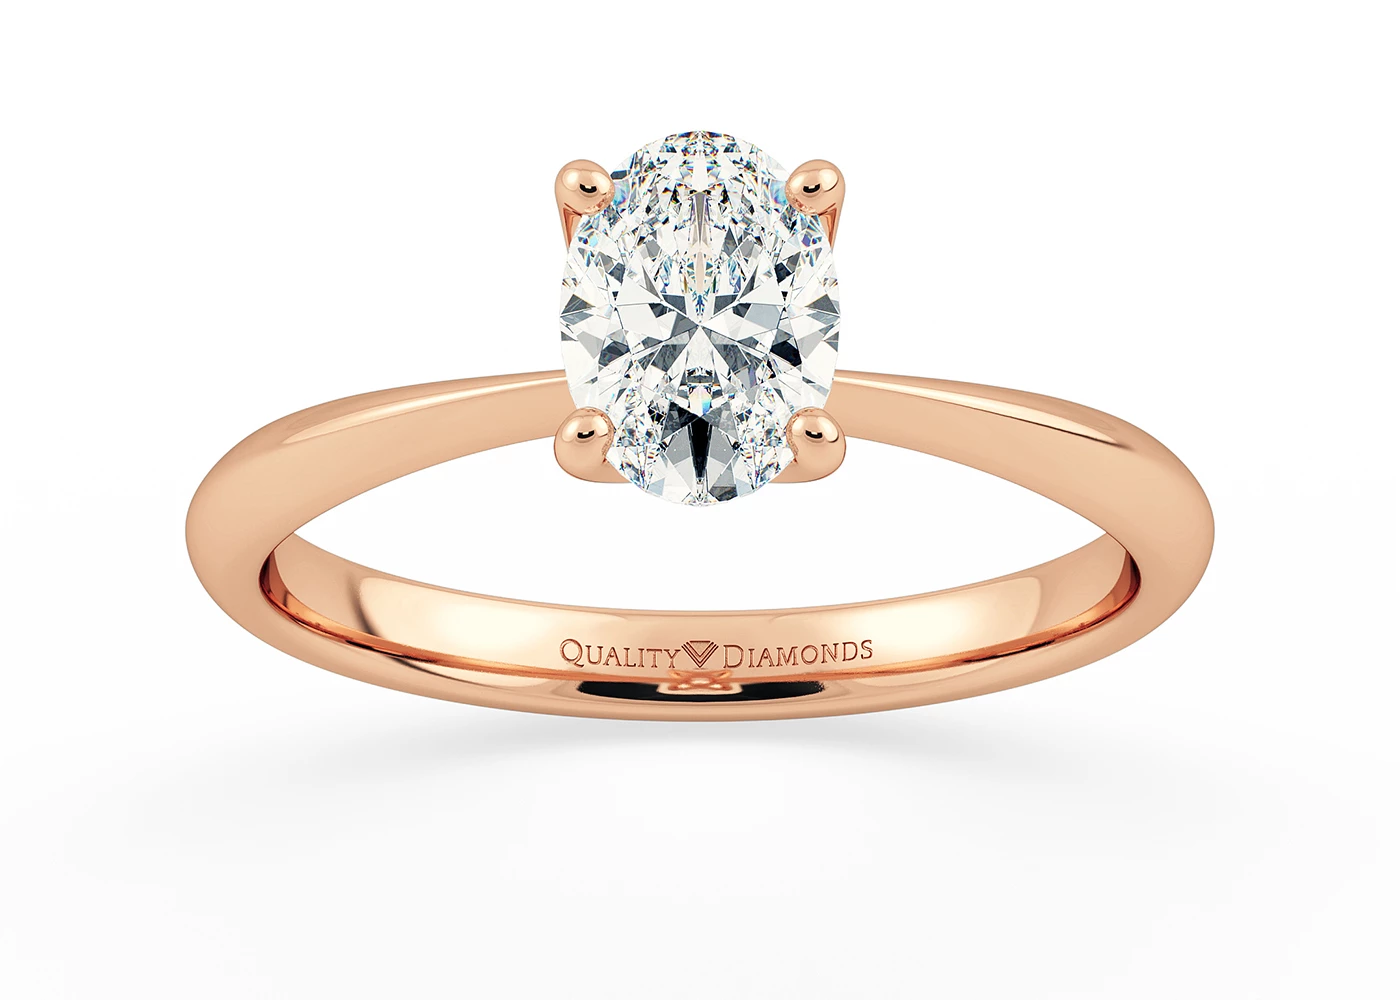 Oval Amorette Diamond Ring in 9K Rose Gold